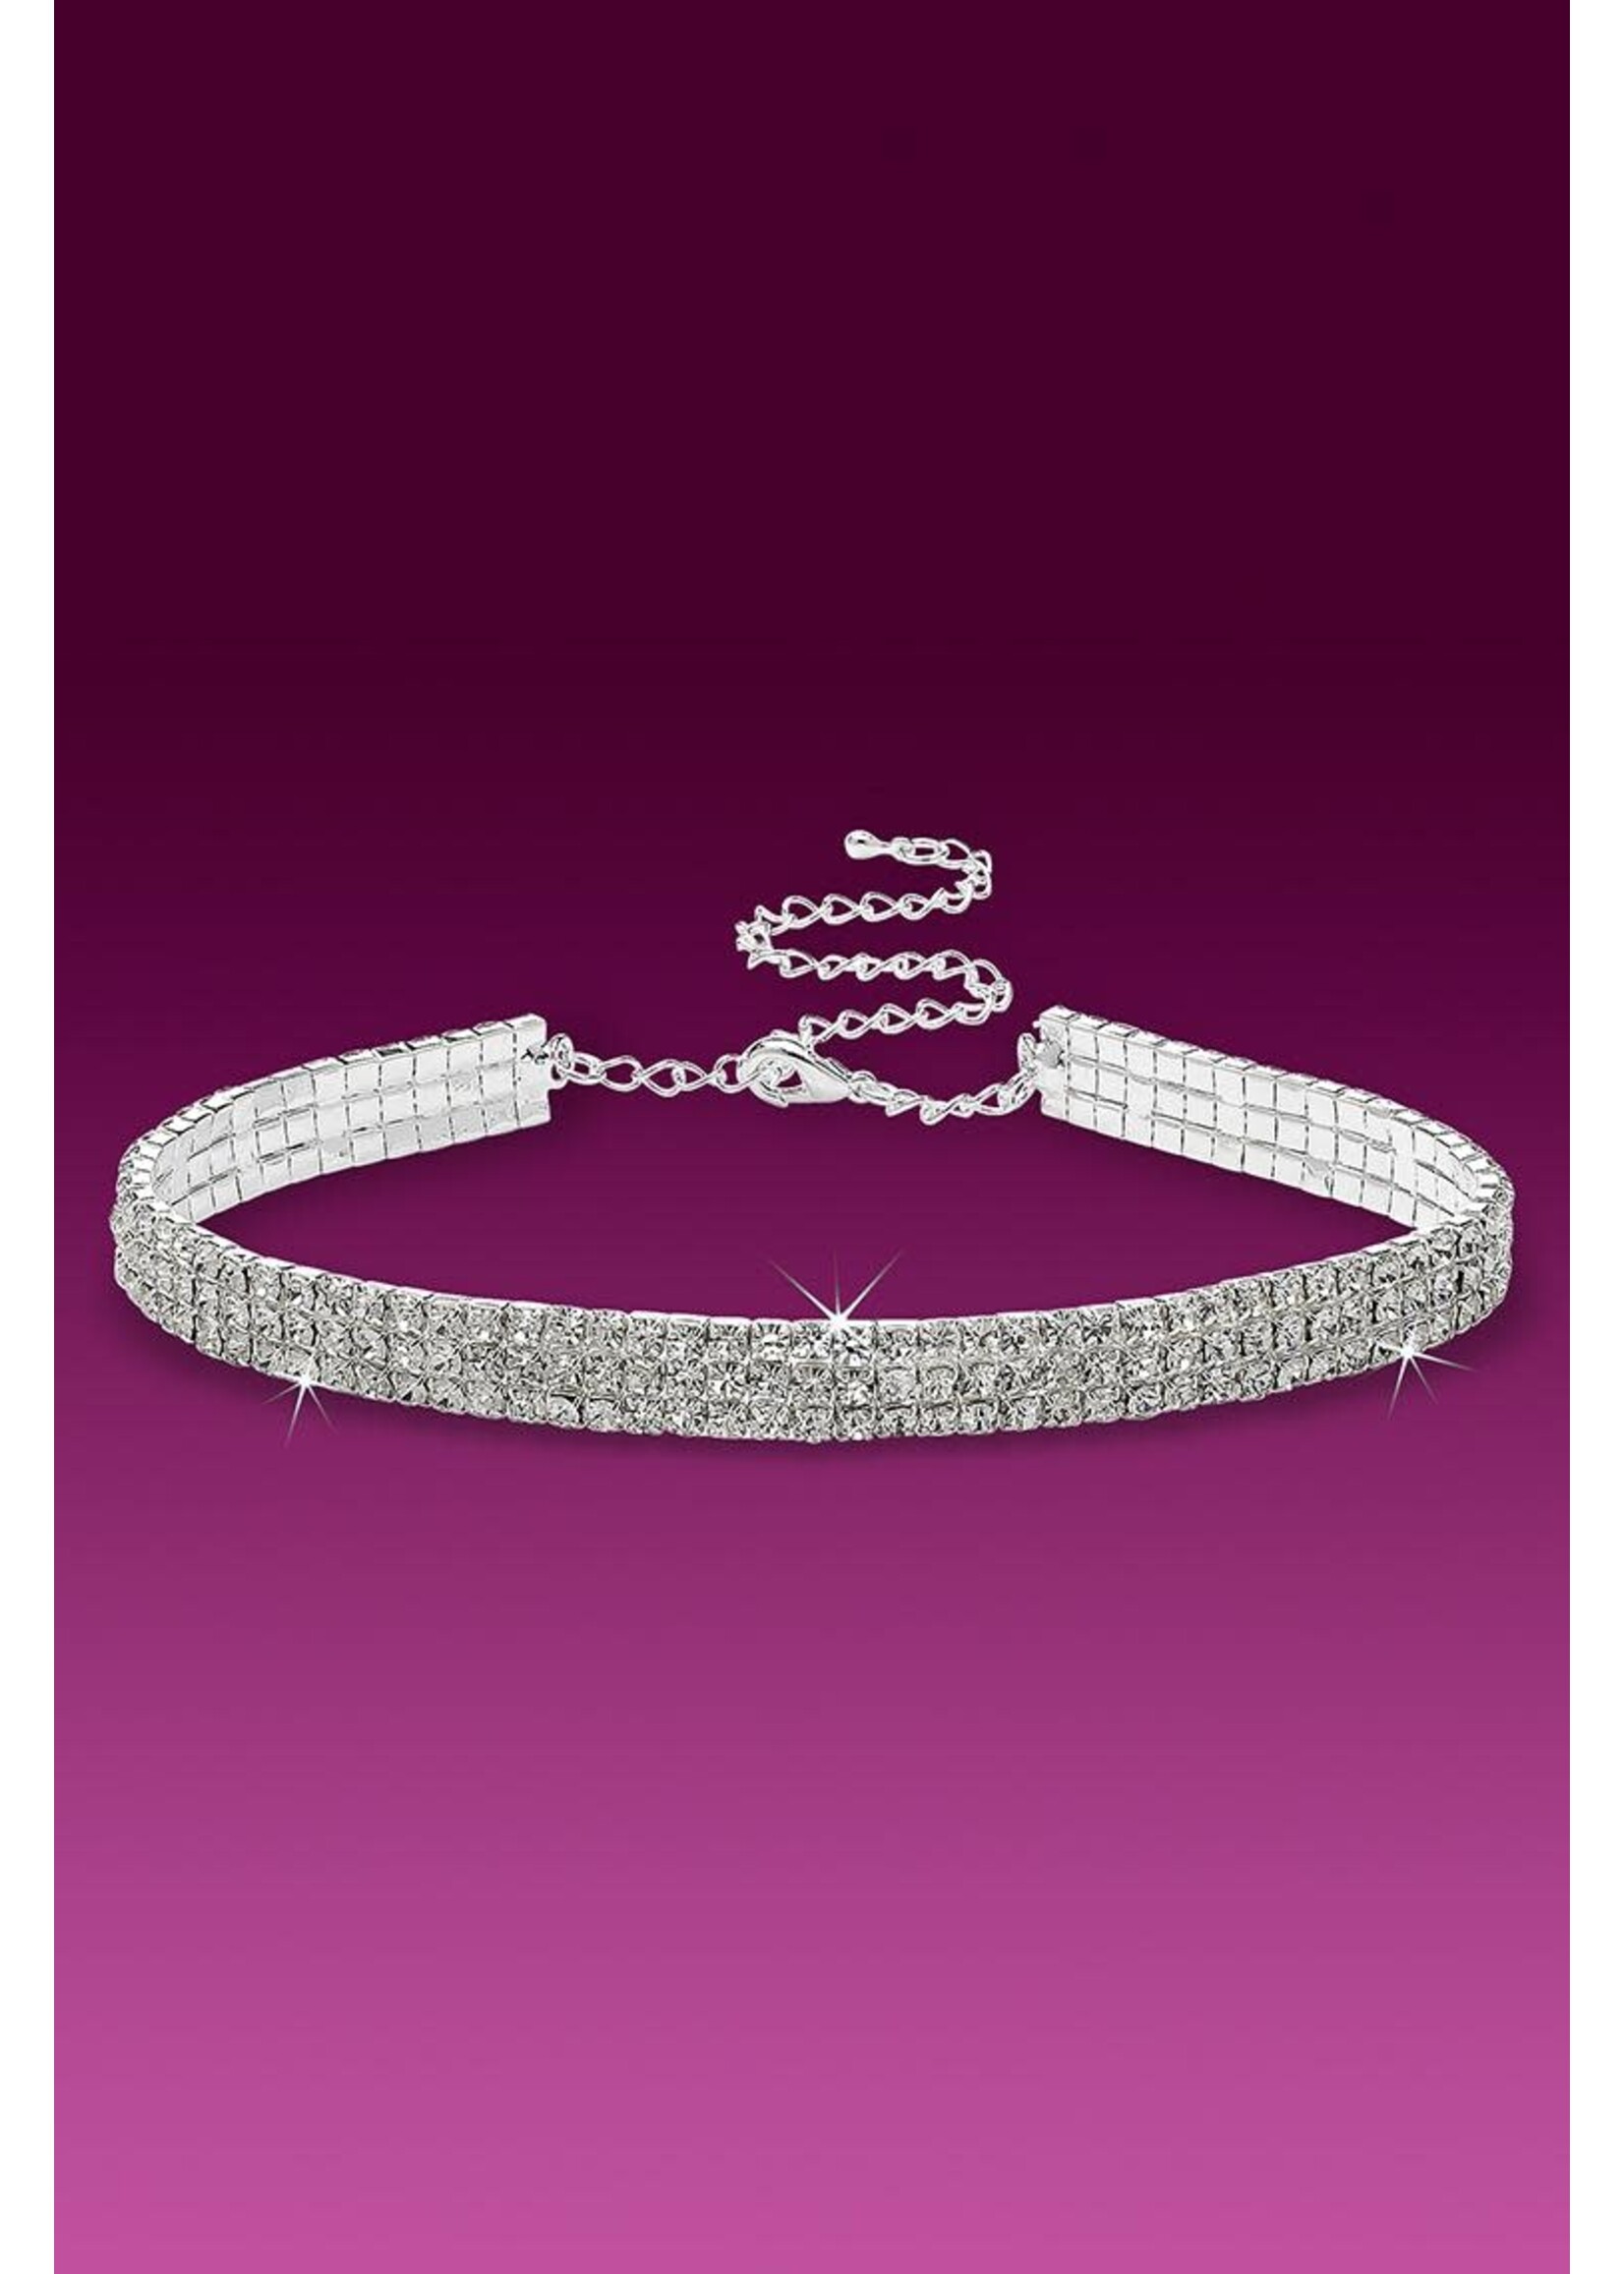 Glamour Goddess Jewelry Inc 3-Row Stretch Rhinestone Choker Necklace